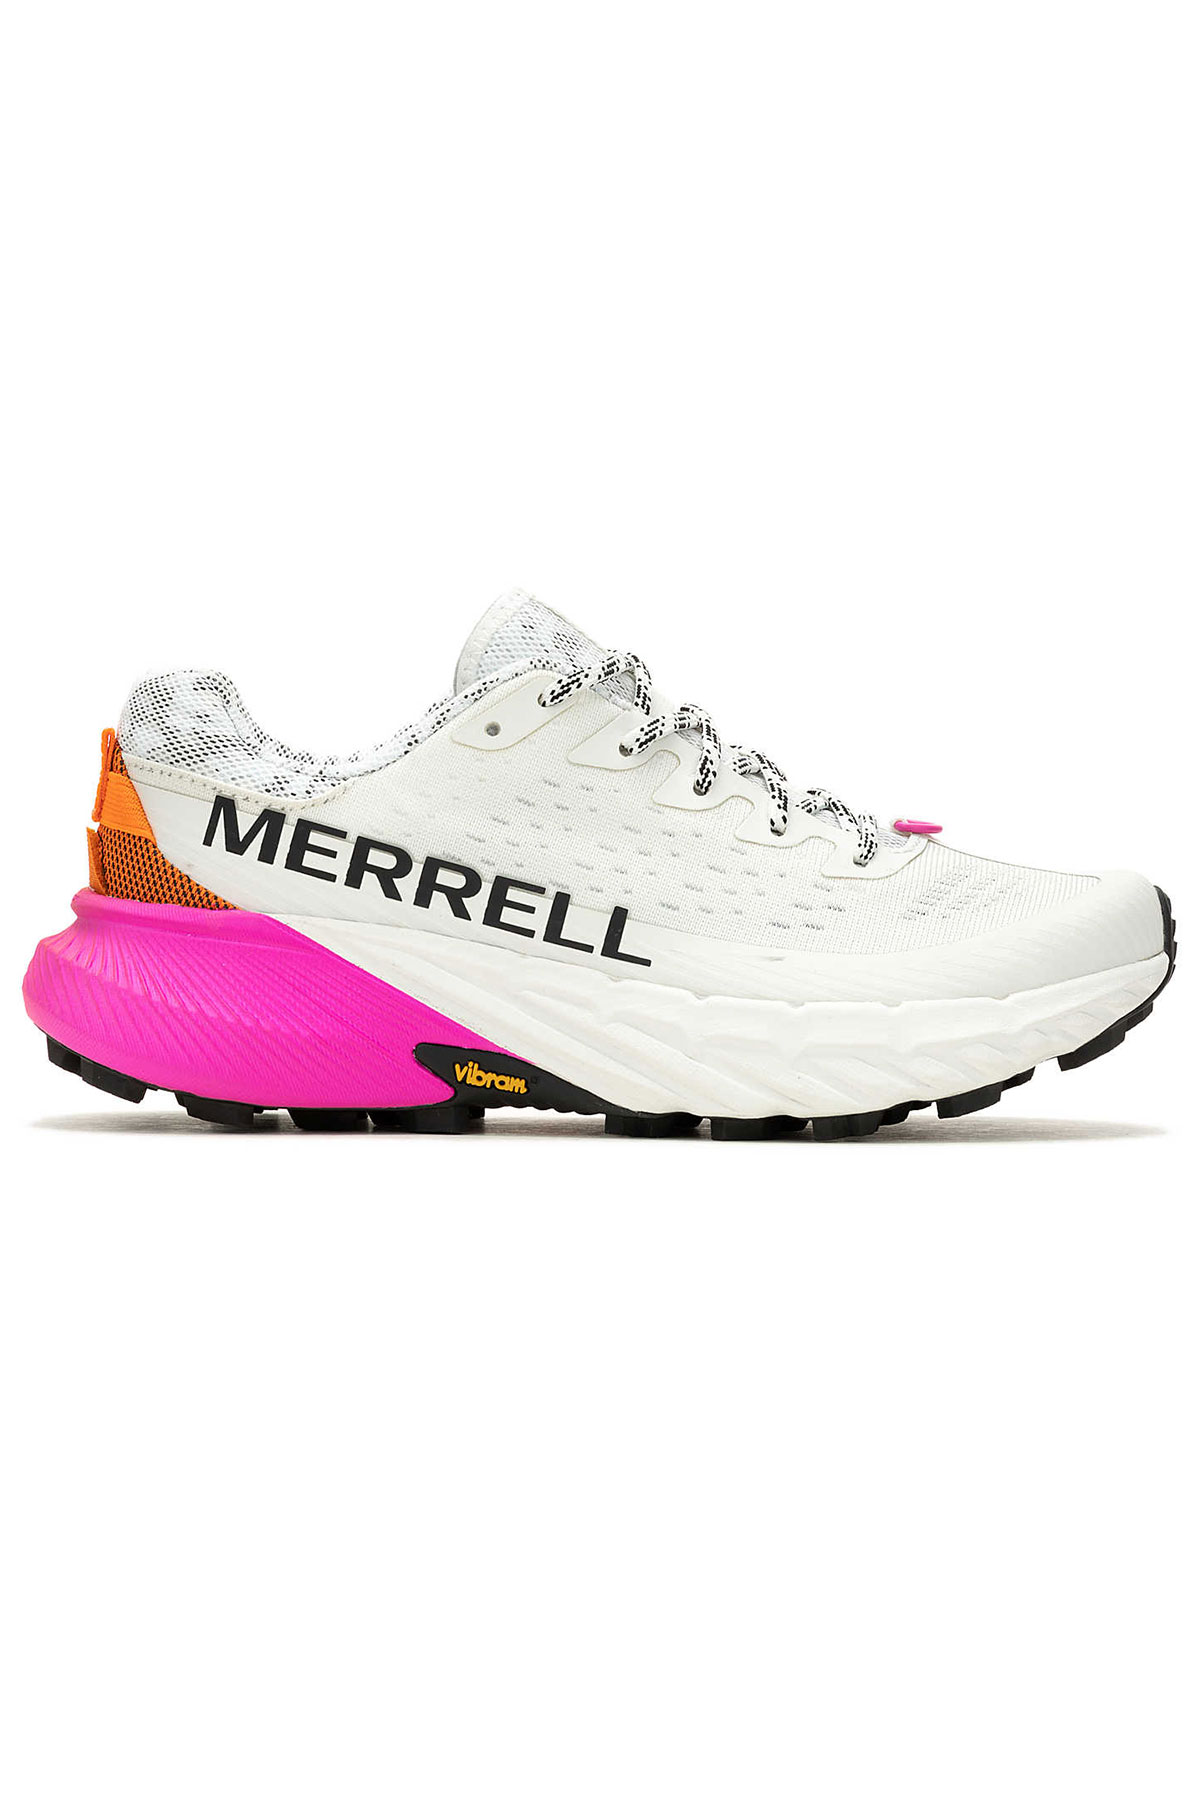 Merrell Agility Peak 5 Kadın Beyaz Patika Koşu Ayakkabısı